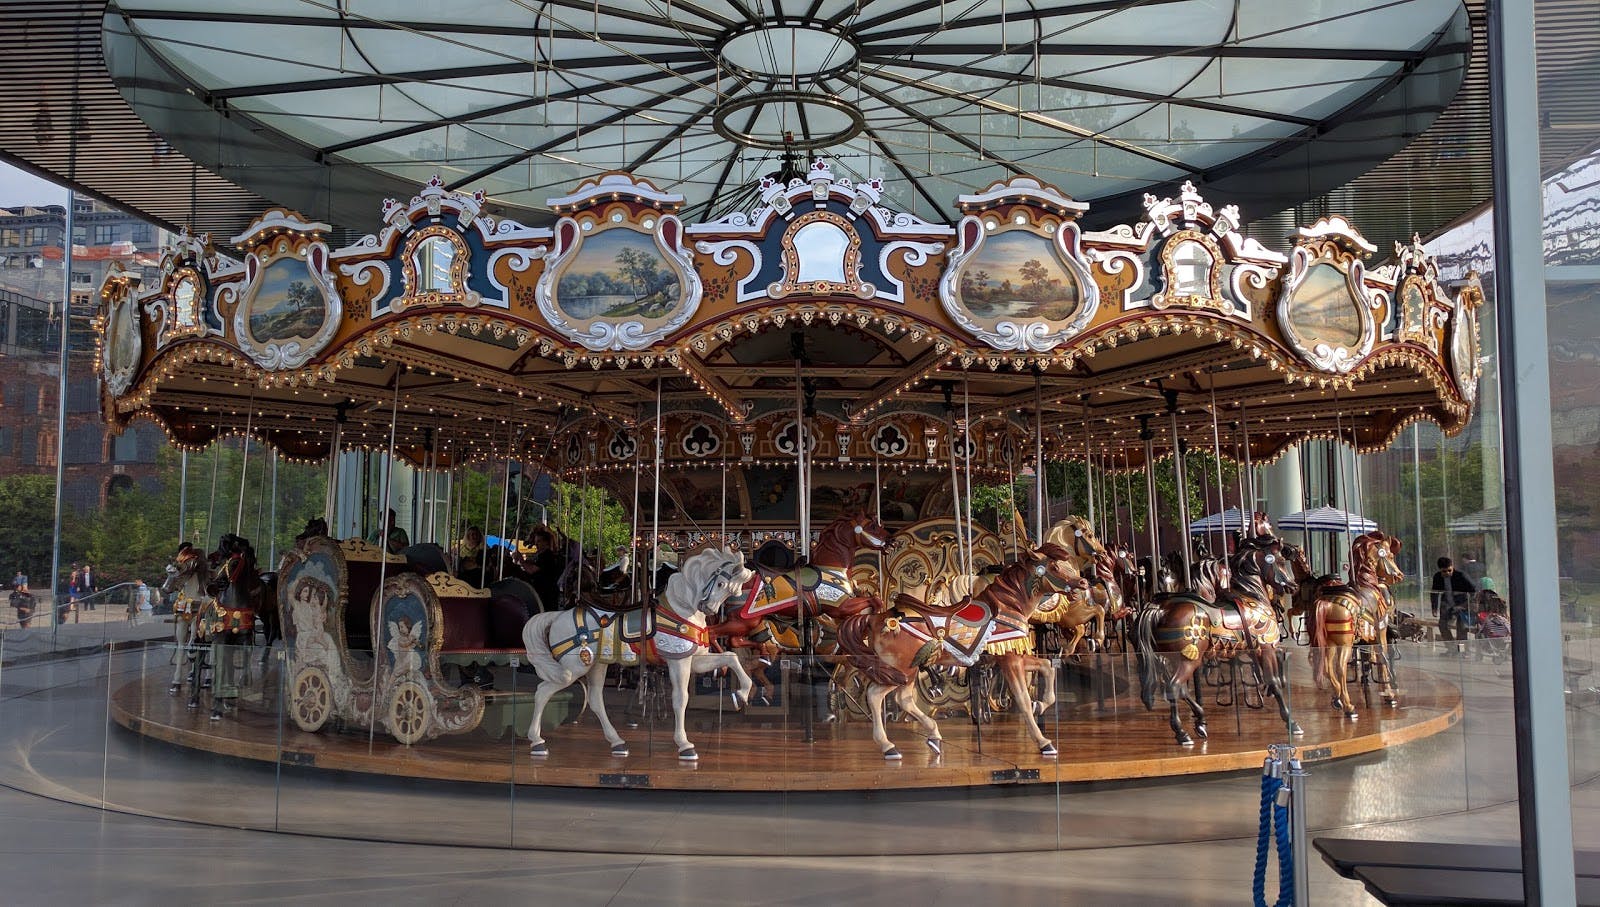 Image - Jane's Carousel